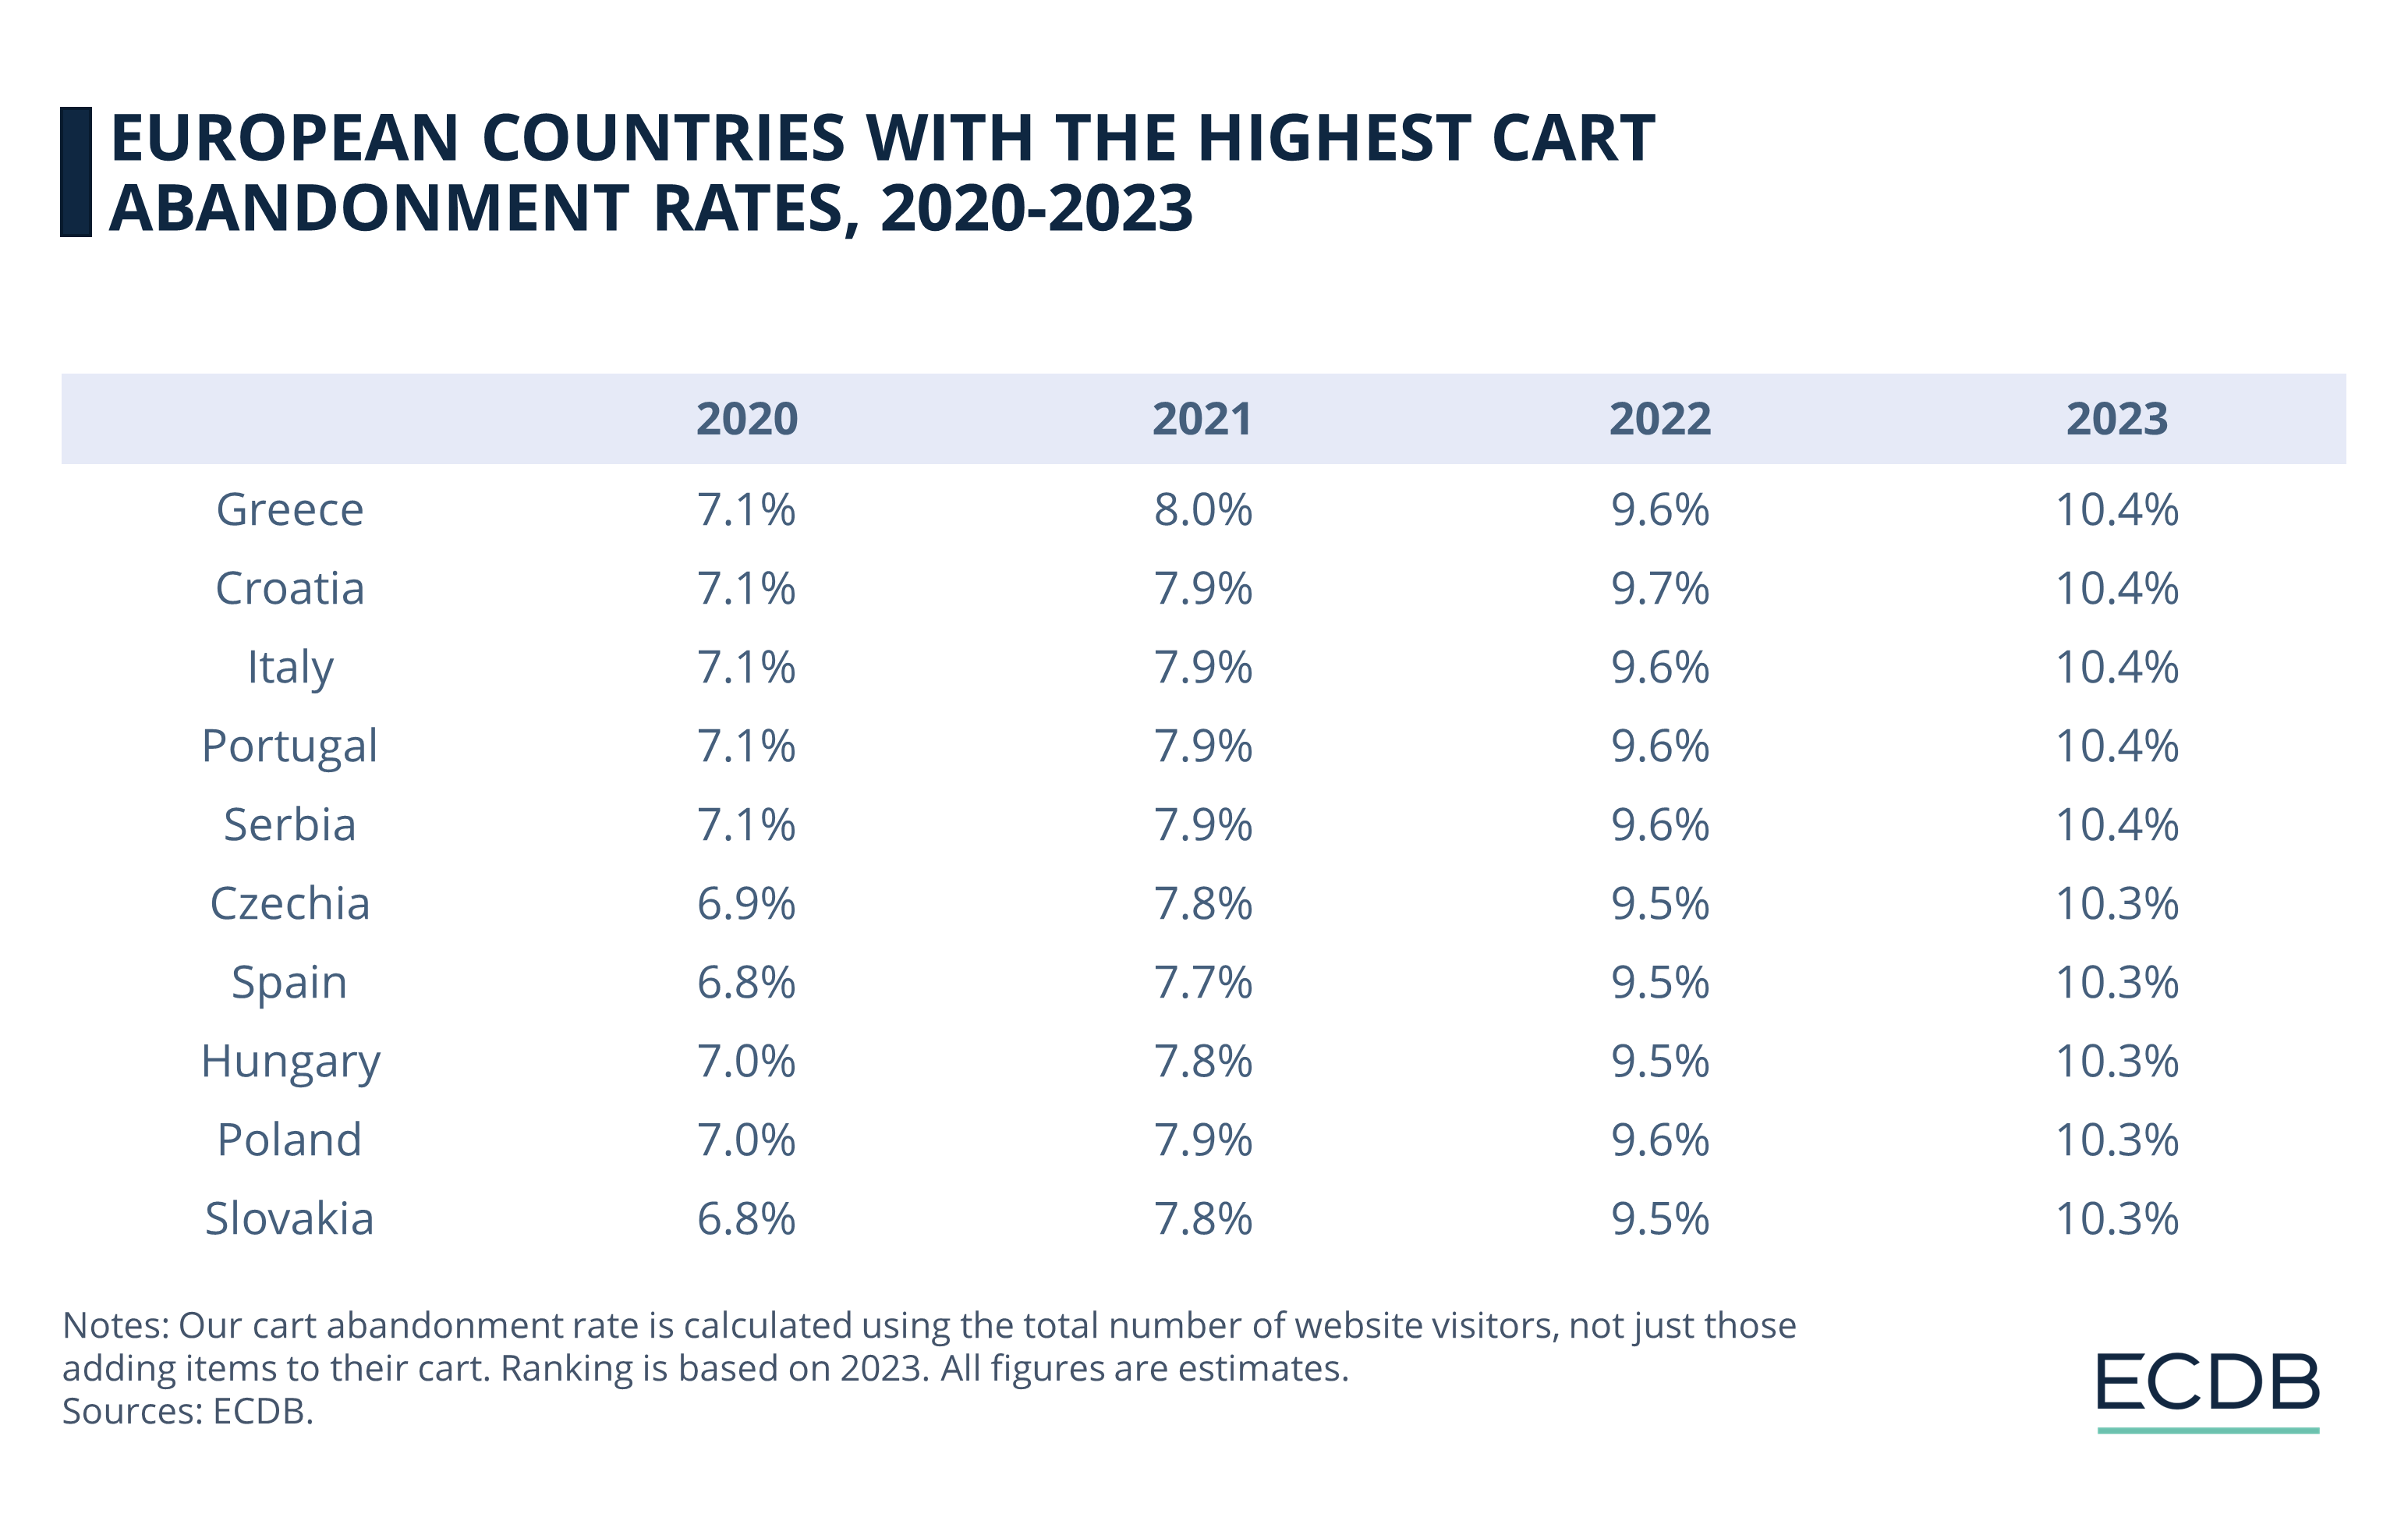 Países europeos con las tasas más altas de abandono de carritos, 2020-2023